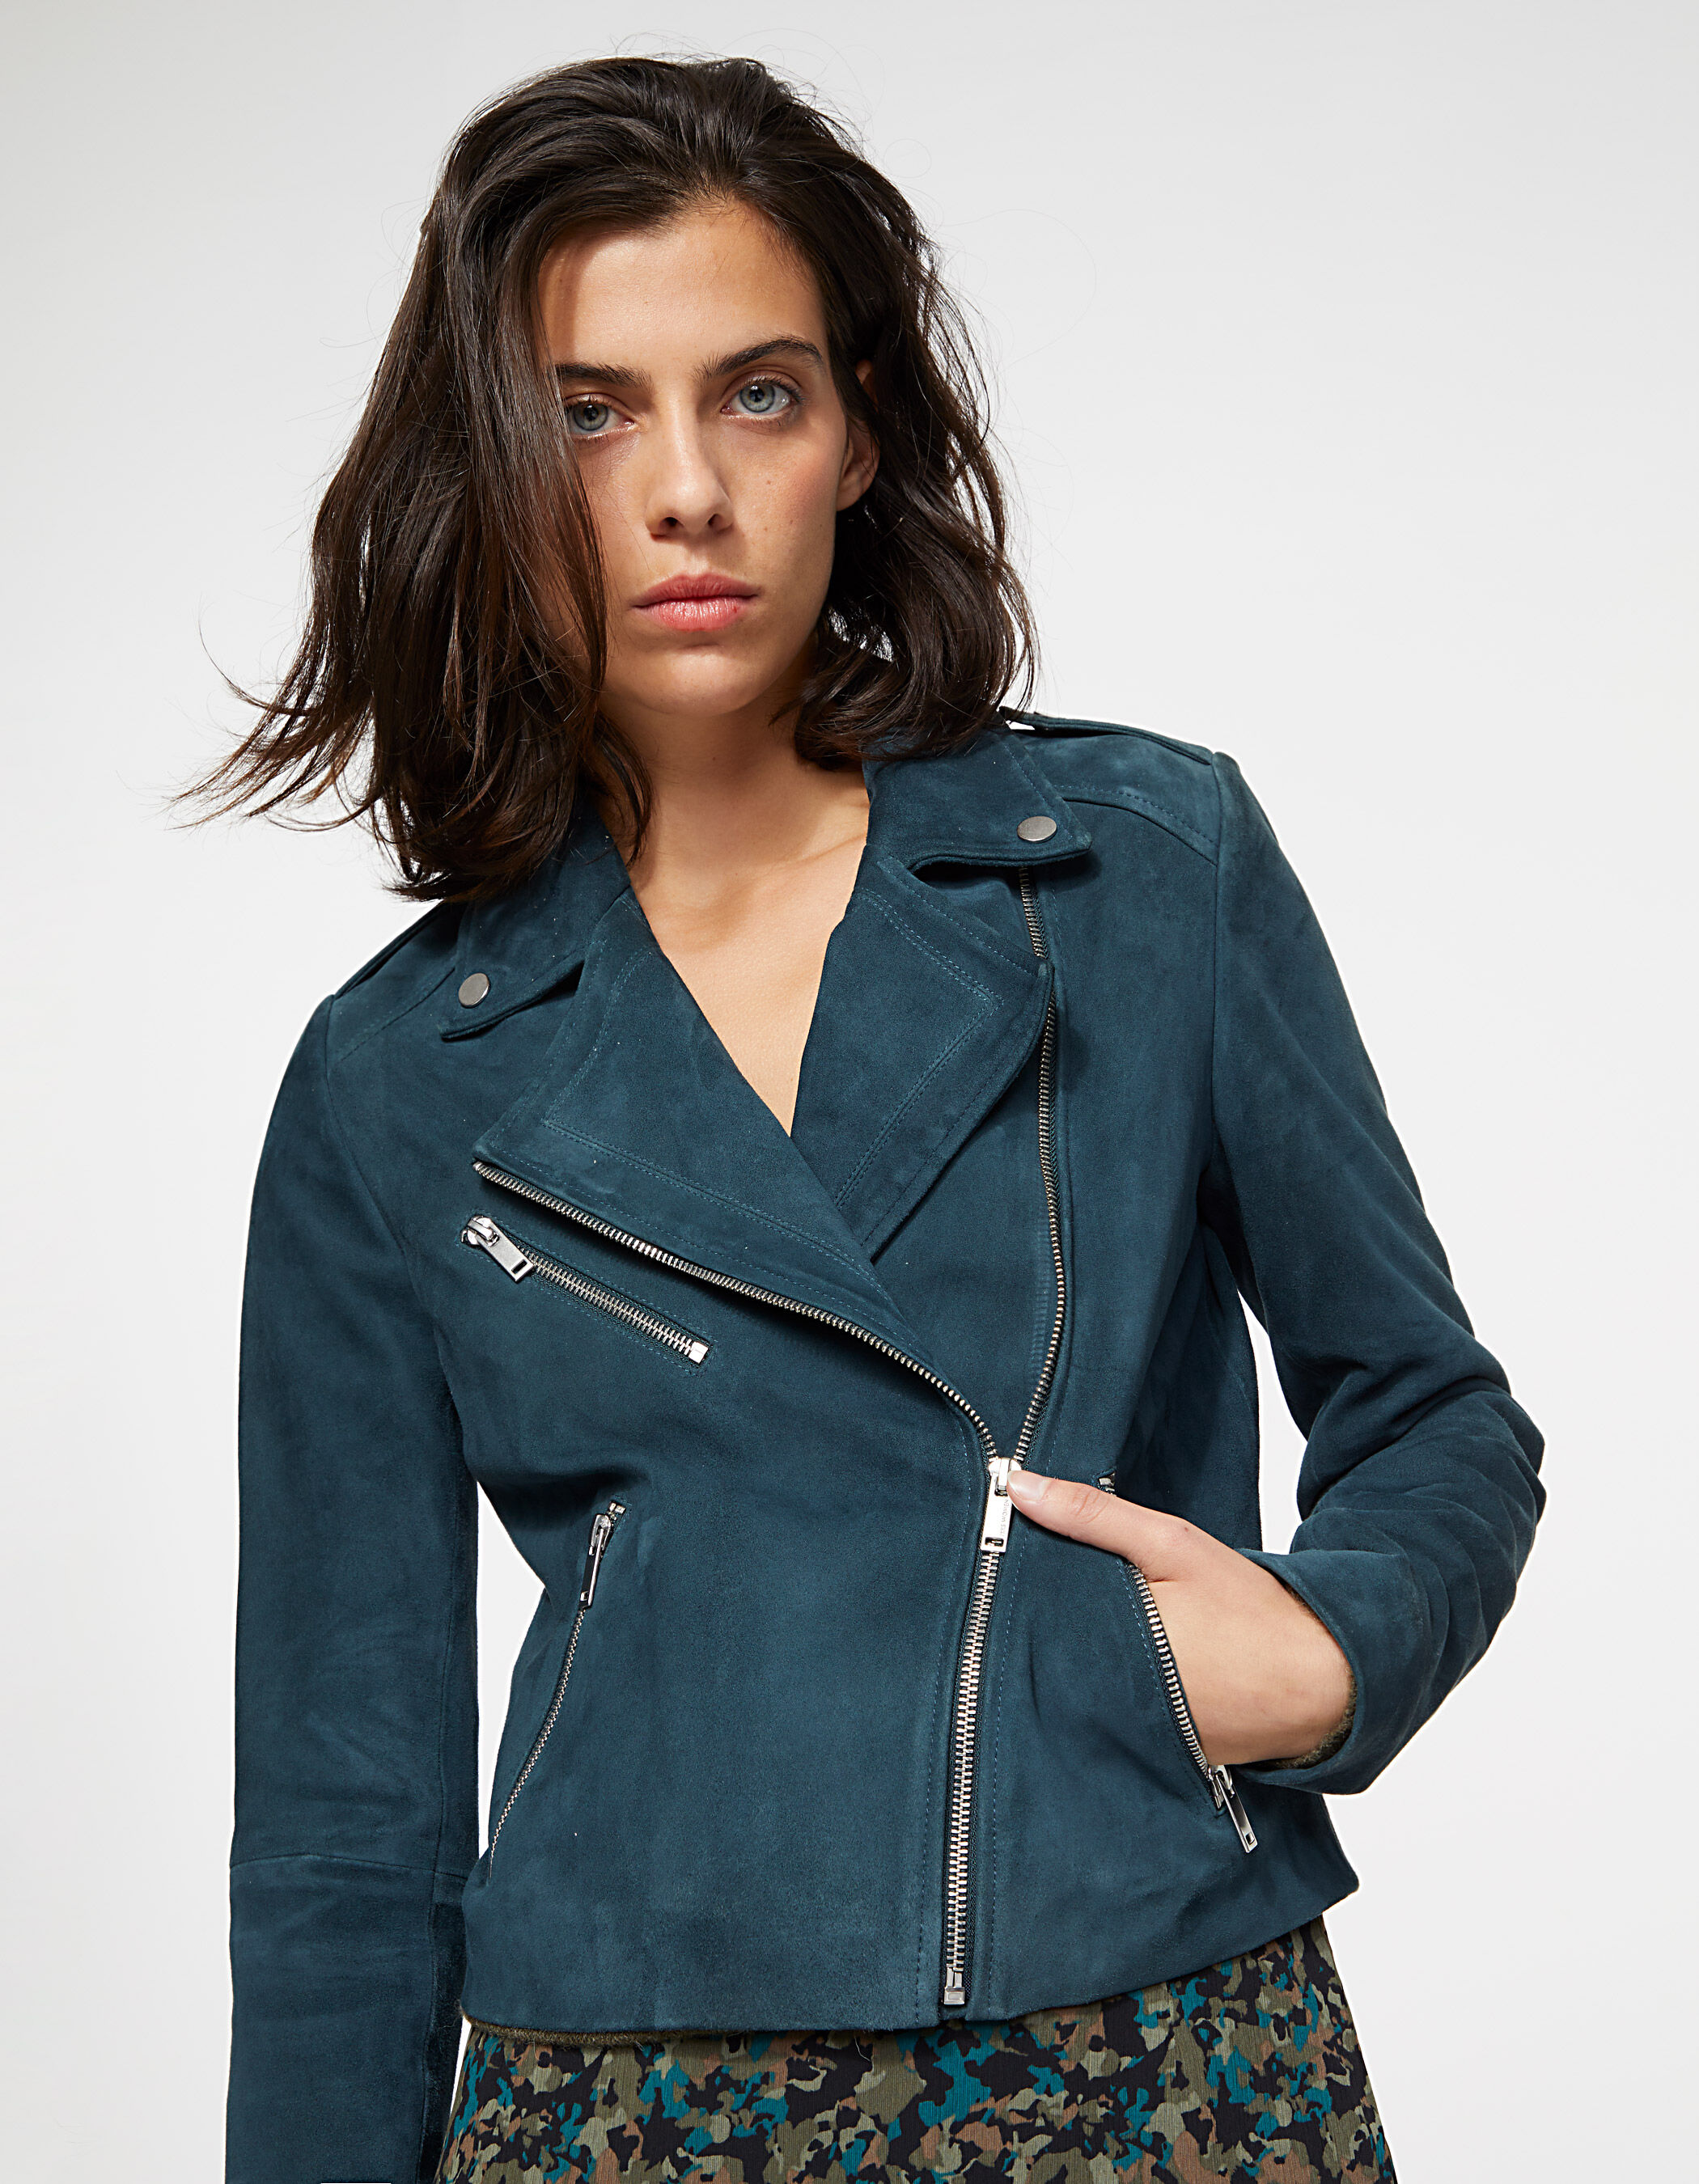 Women's black zip sleeve lambskin leather jacket